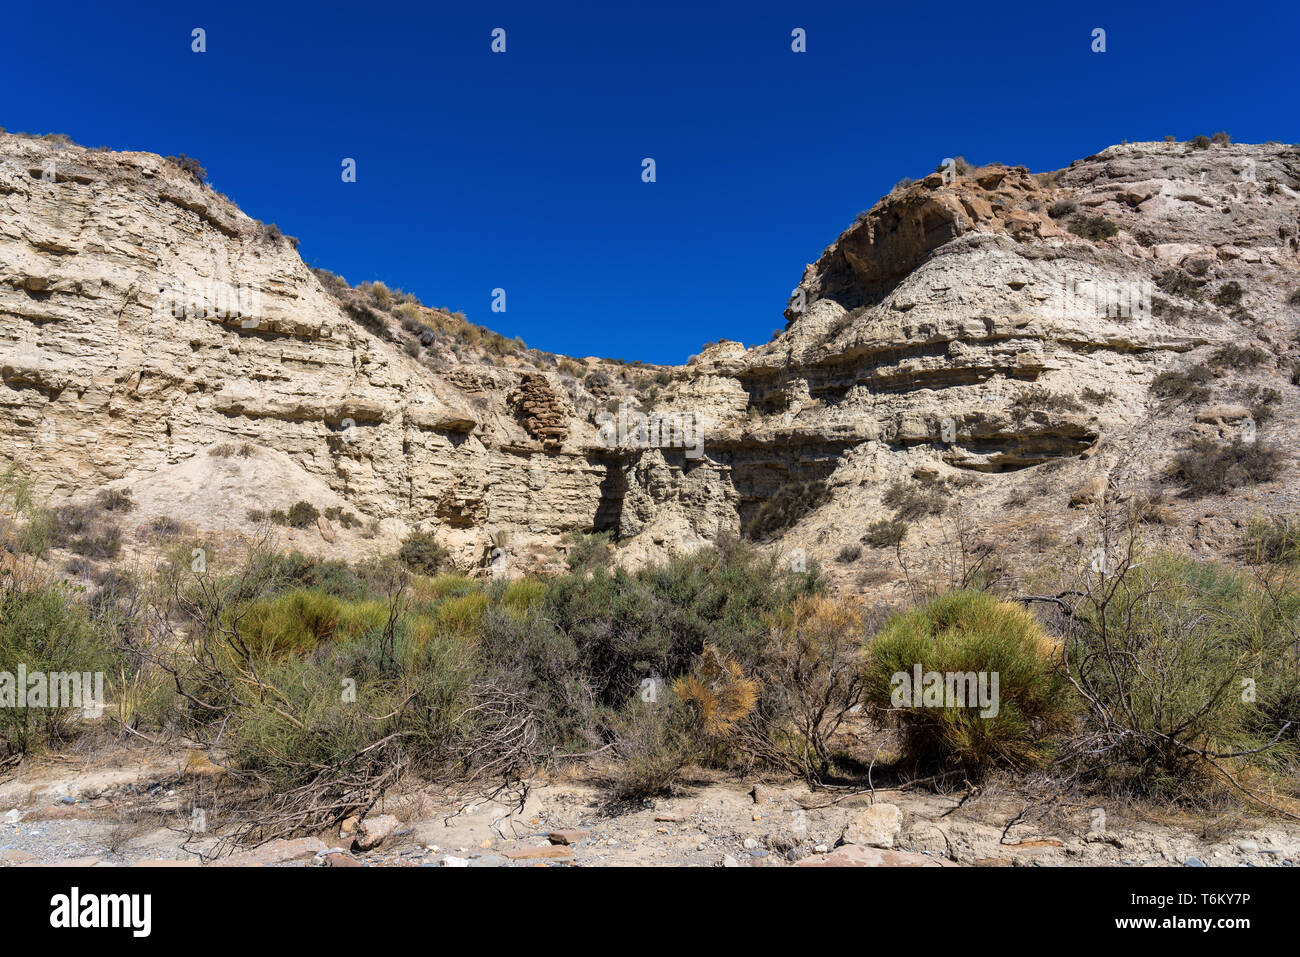 Tabernas Wüste, in spanischer Sprache Desierto de Tabernas, Andalusien, Spanien Stockfoto